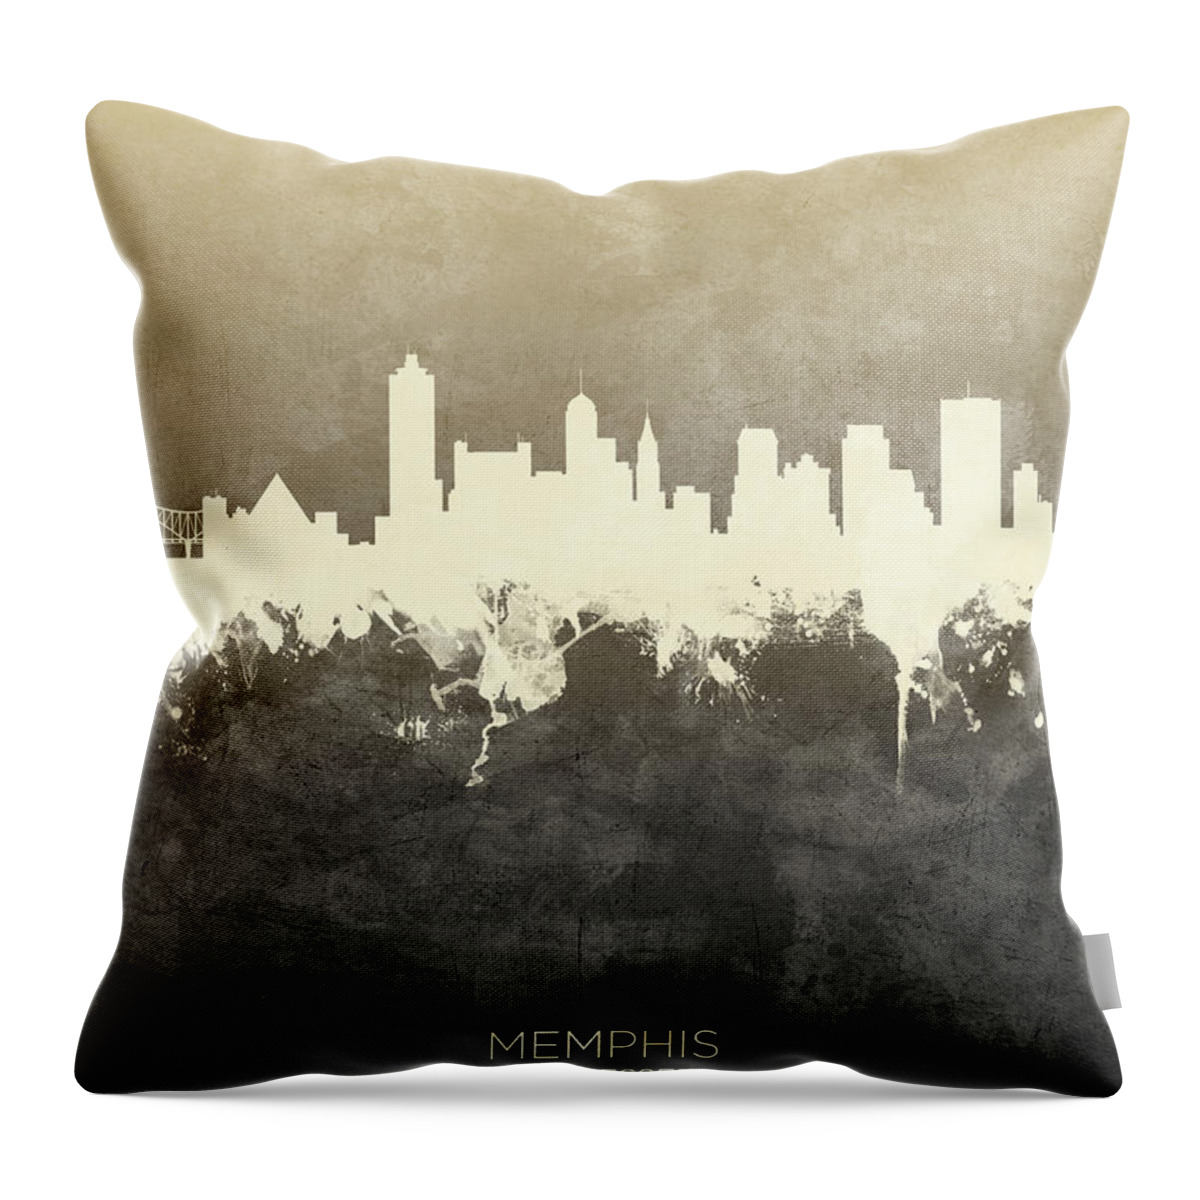 Memphis Throw Pillow featuring the digital art Memphis Tennessee Skyline by Michael Tompsett